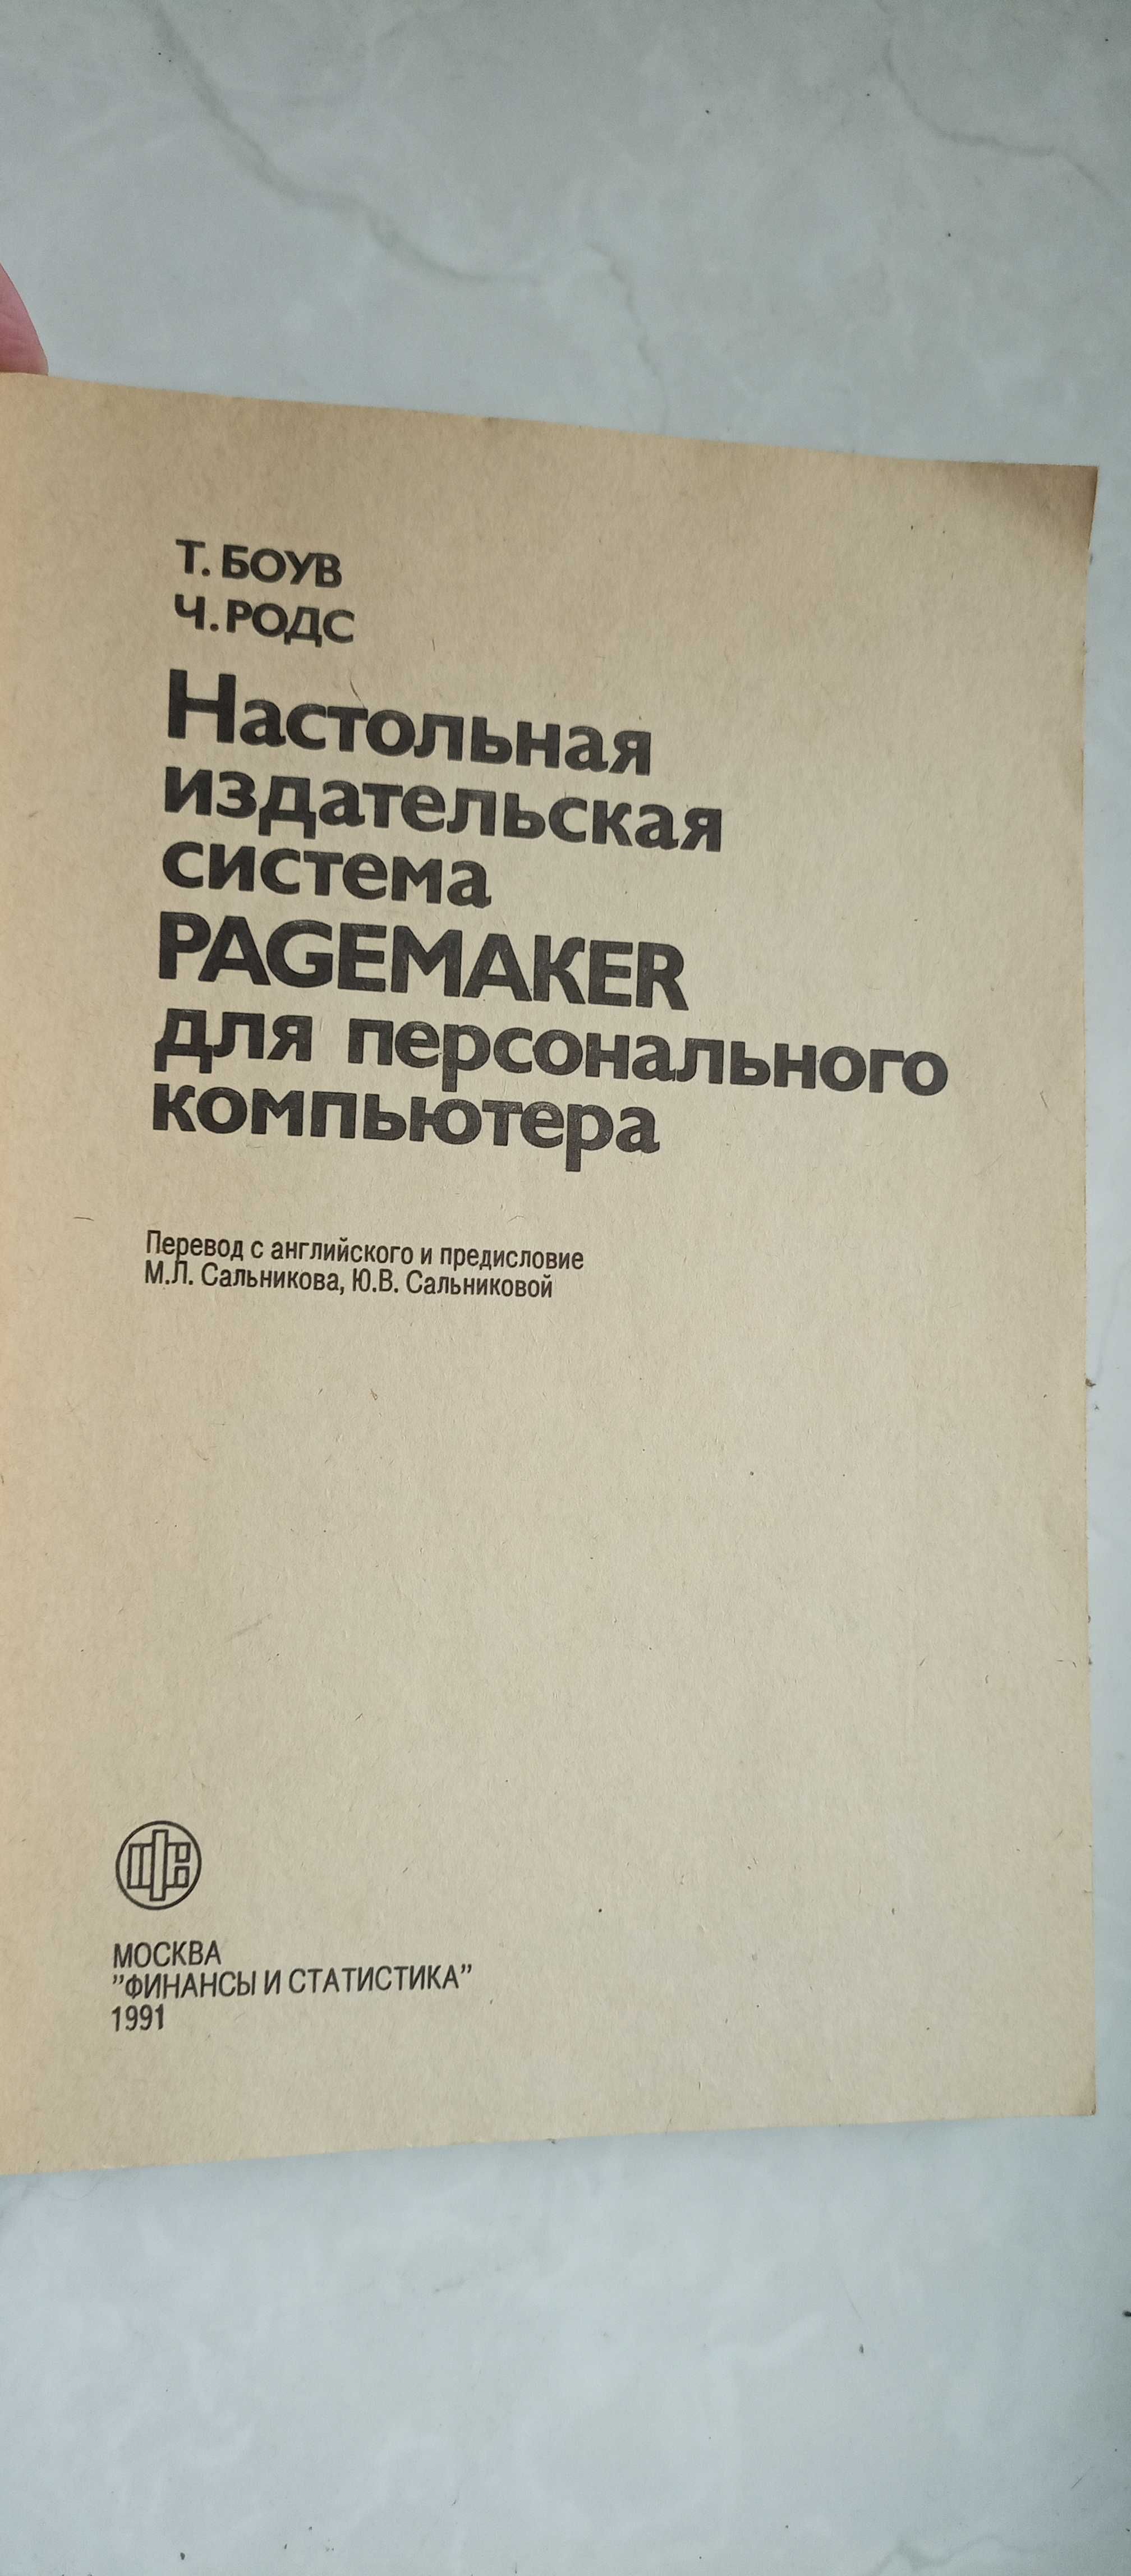 Настольная издательская система Pagemaker для персонального компьютера